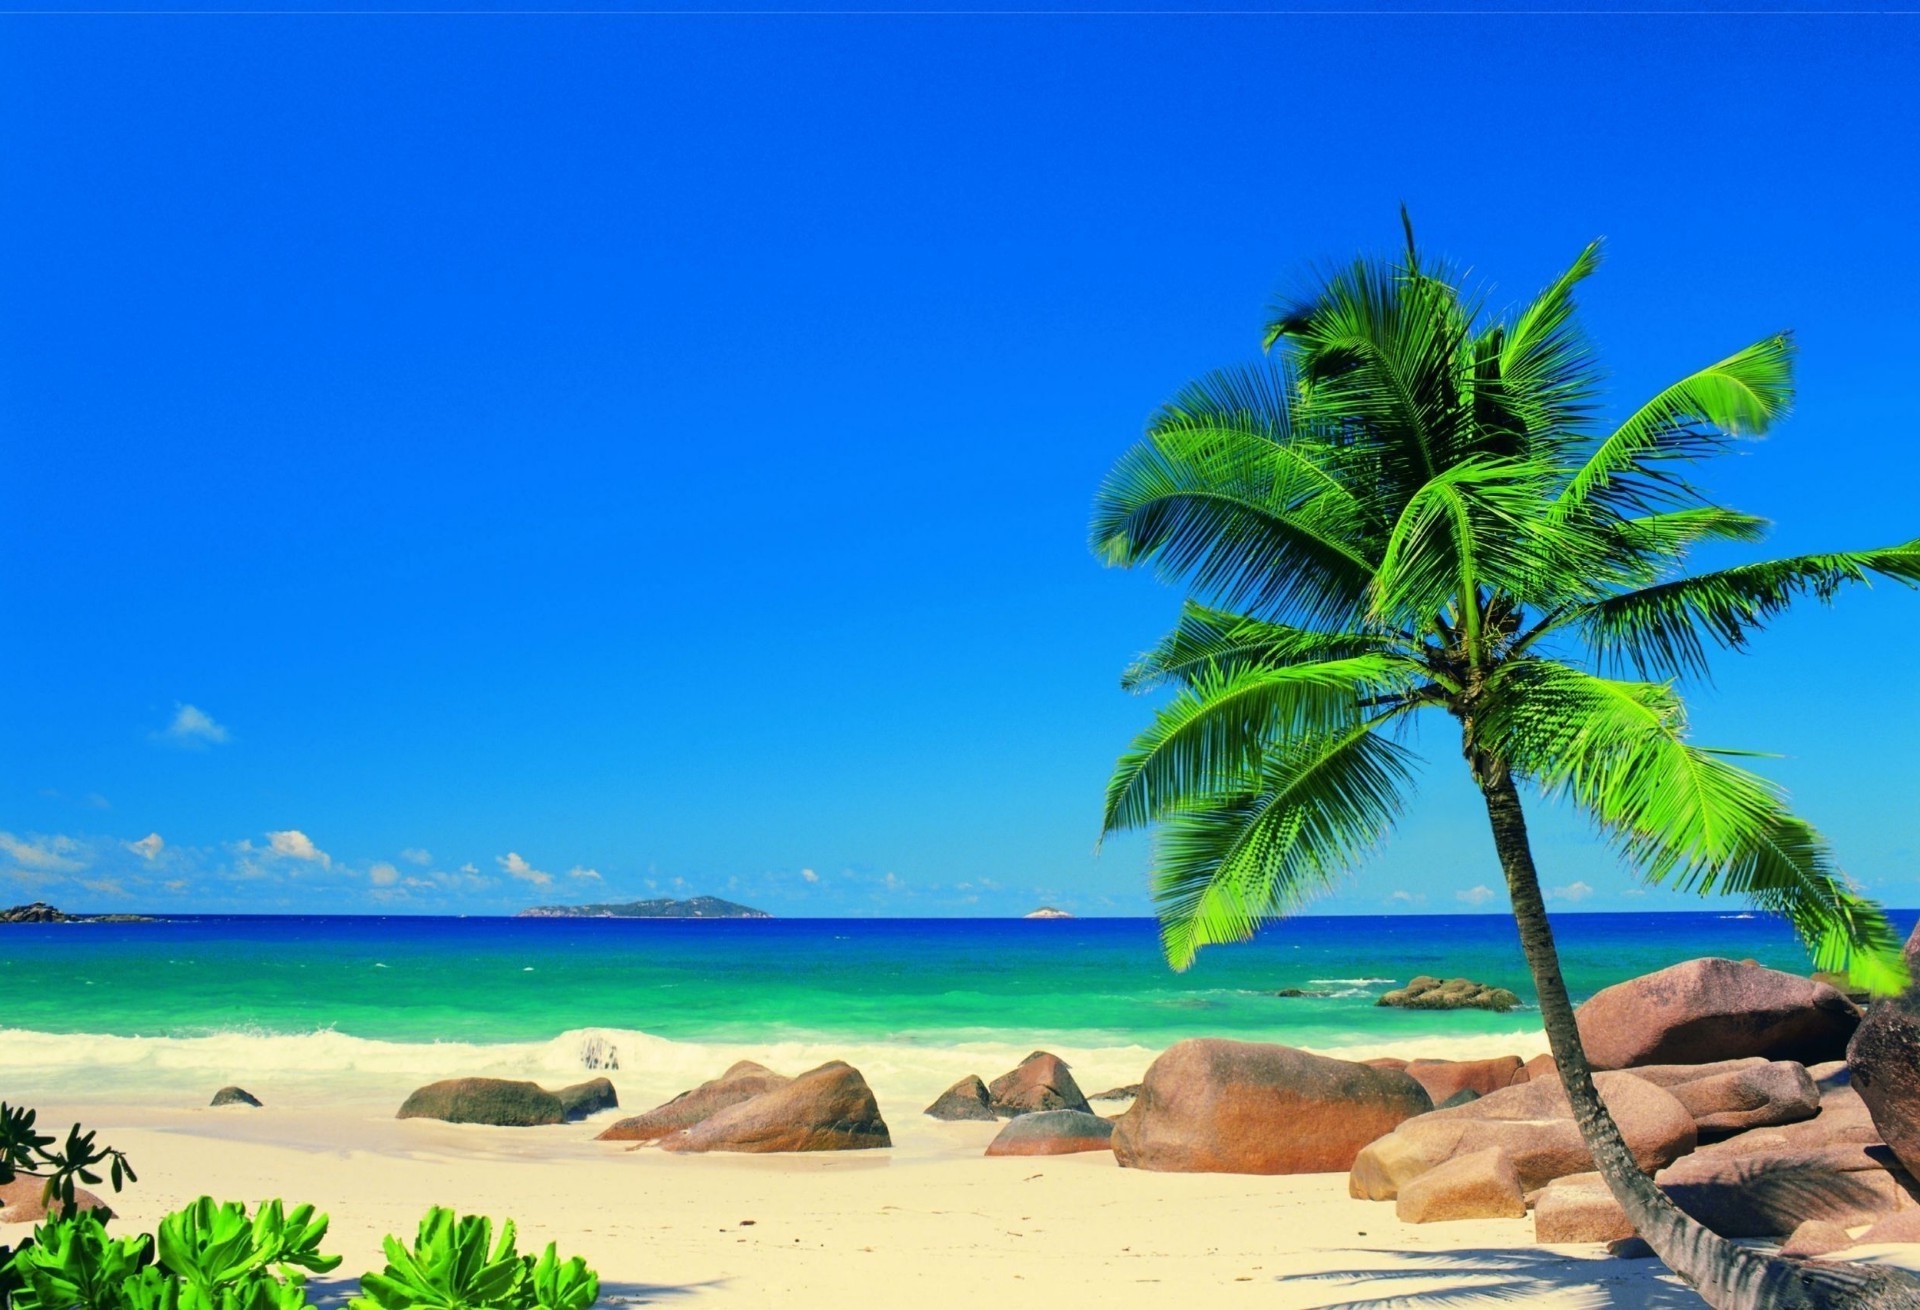 море и океан тропический песок пляж идиллия остров моря курорт бирюза релаксация отпуск лето путешествия рай океан ладони пейзаж воды экзотические солнце отдых